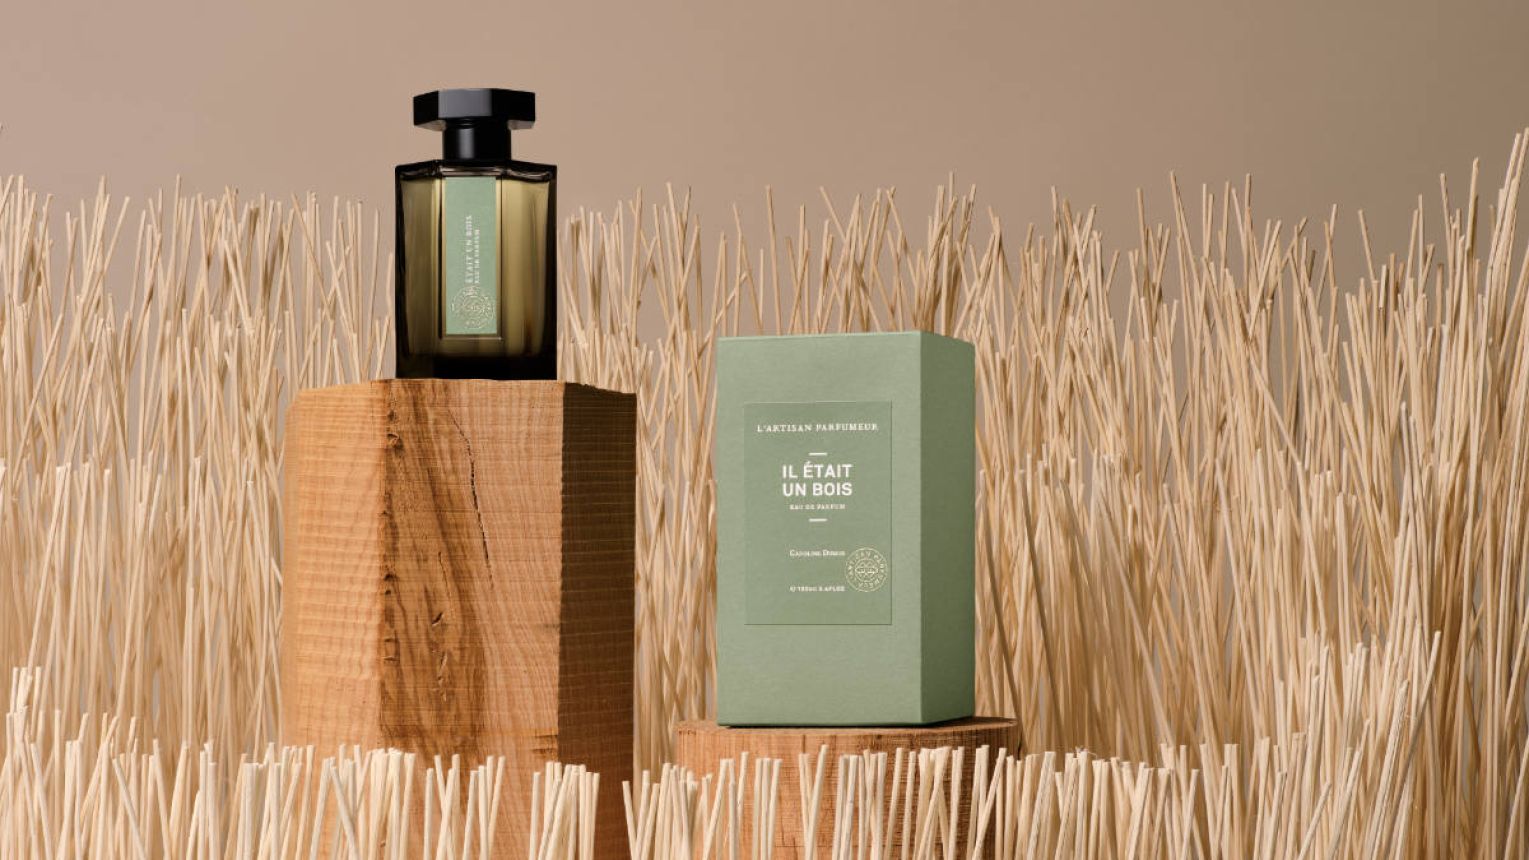 L’Artisan Parfumer Presents Its New Fragrance: Il était Un Bois